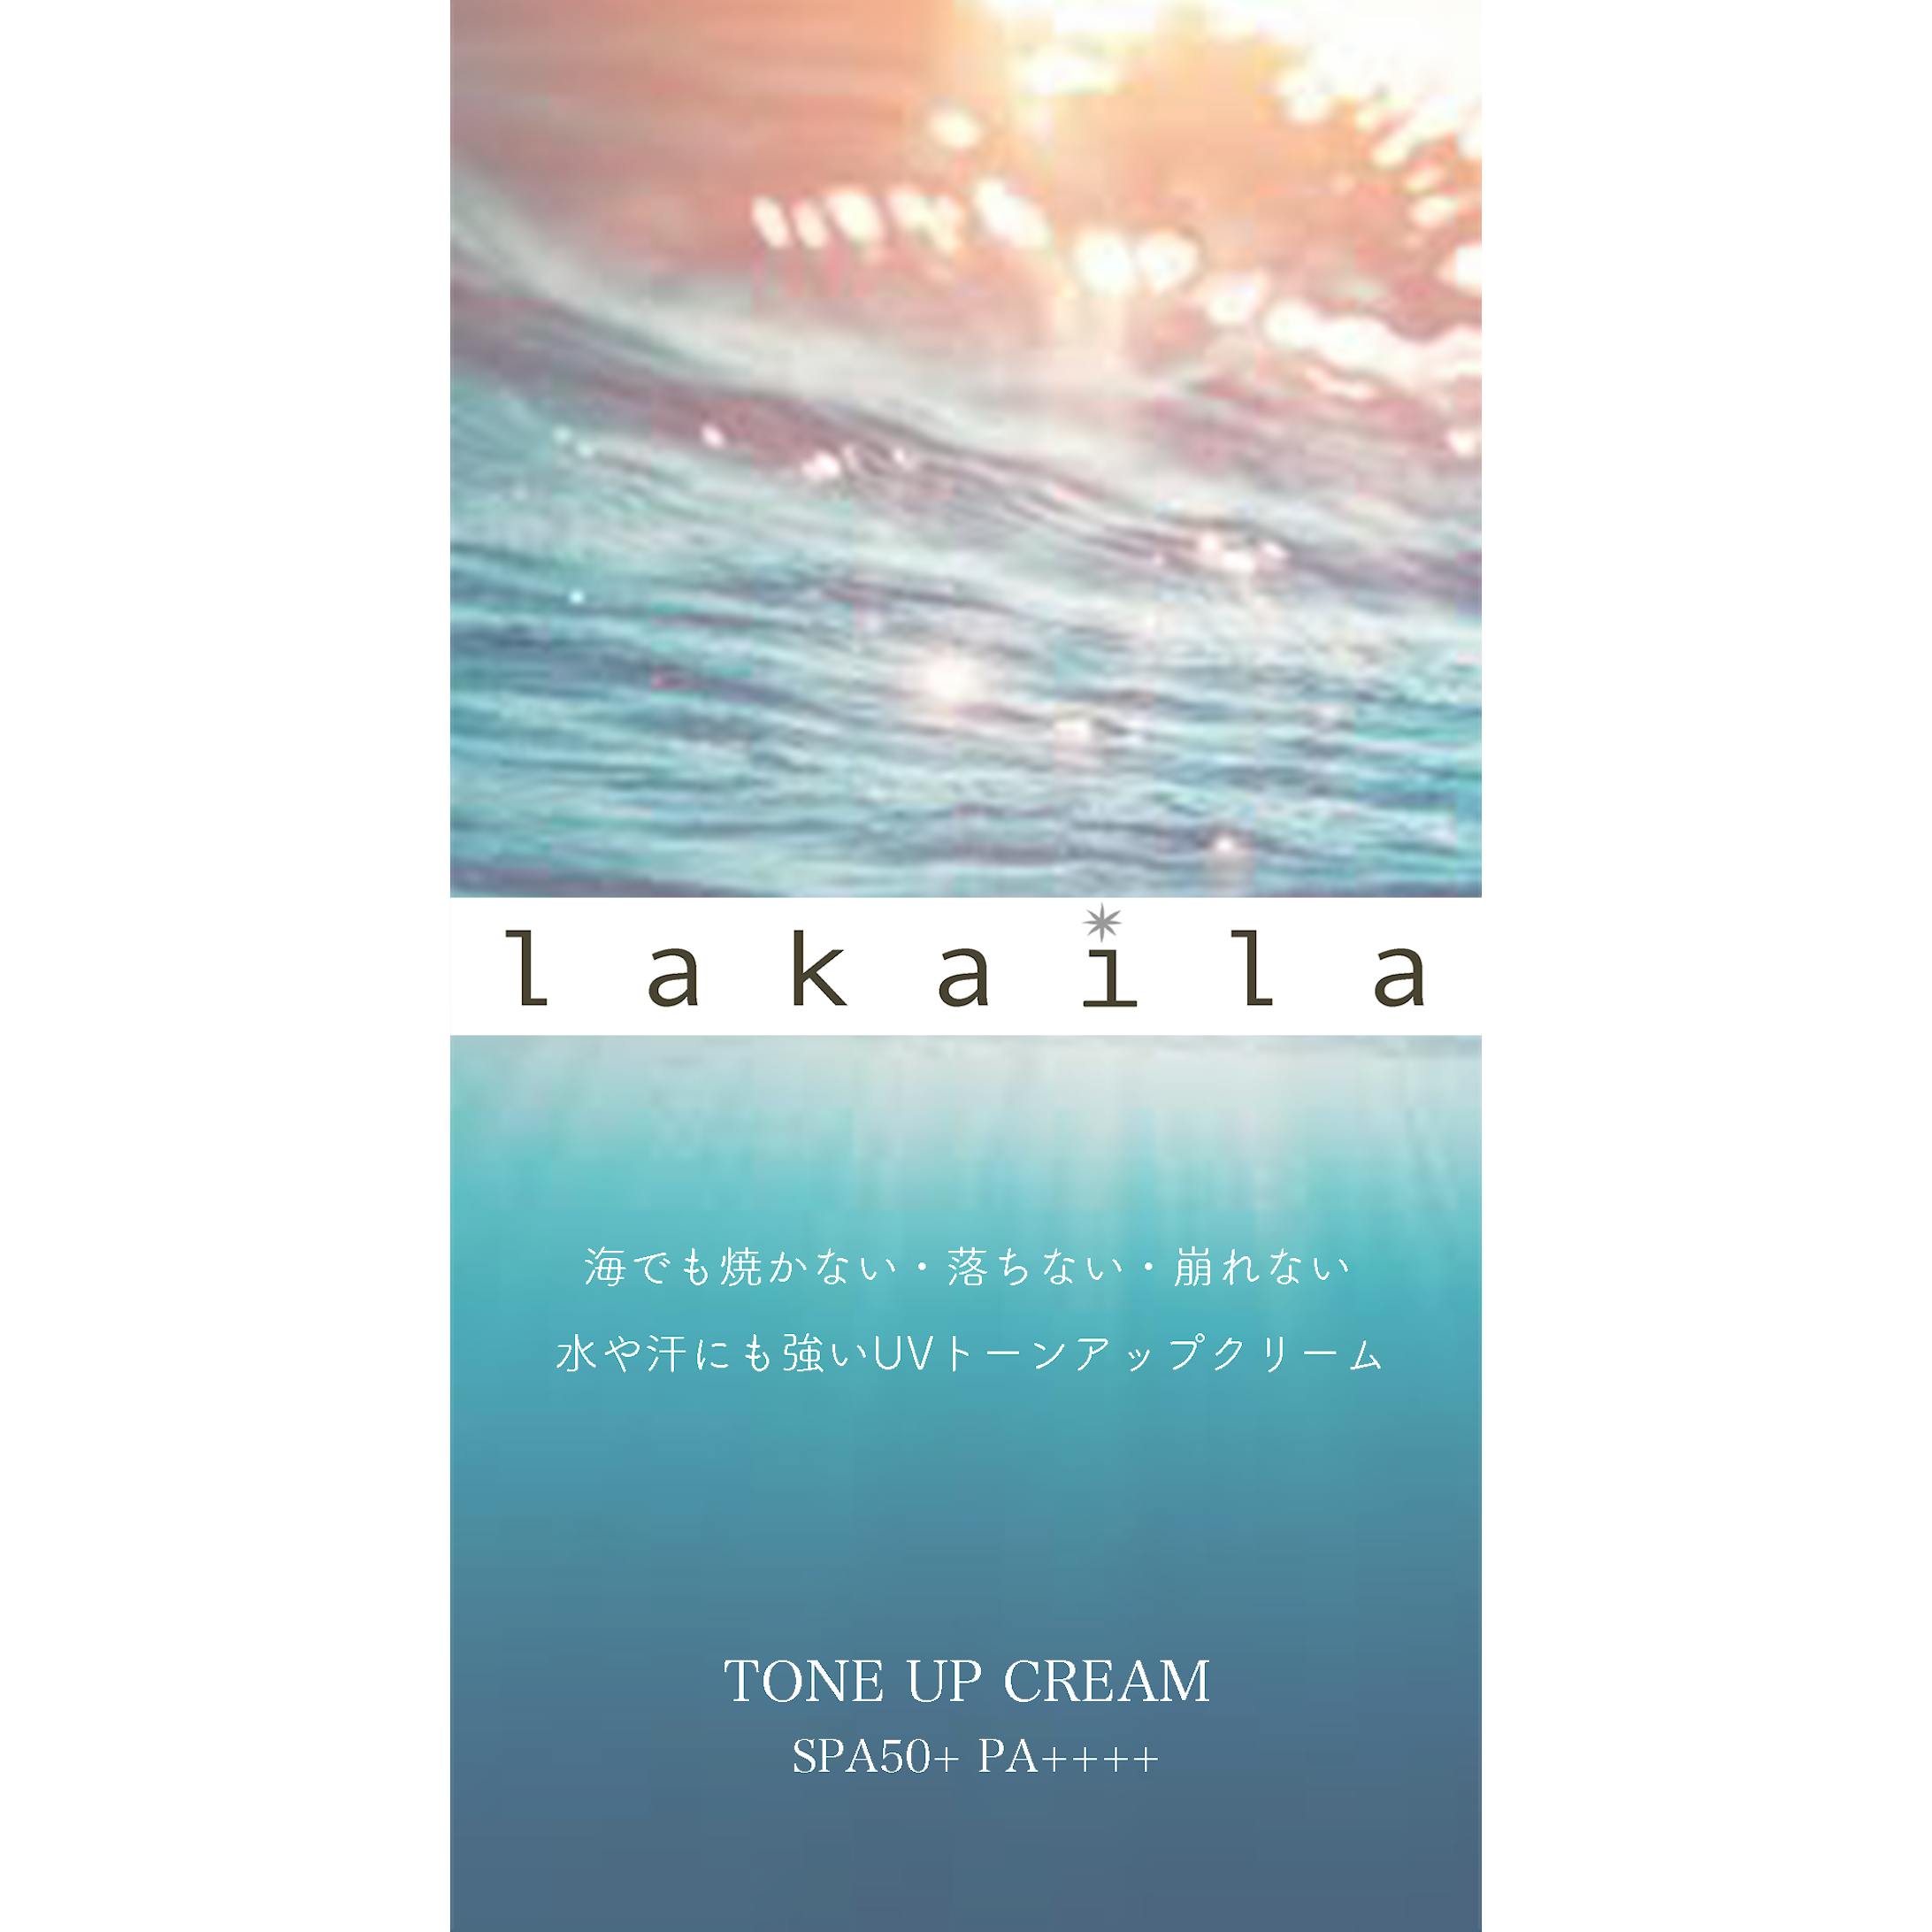 【Lakaira】パッケージとロゴデザイン-1